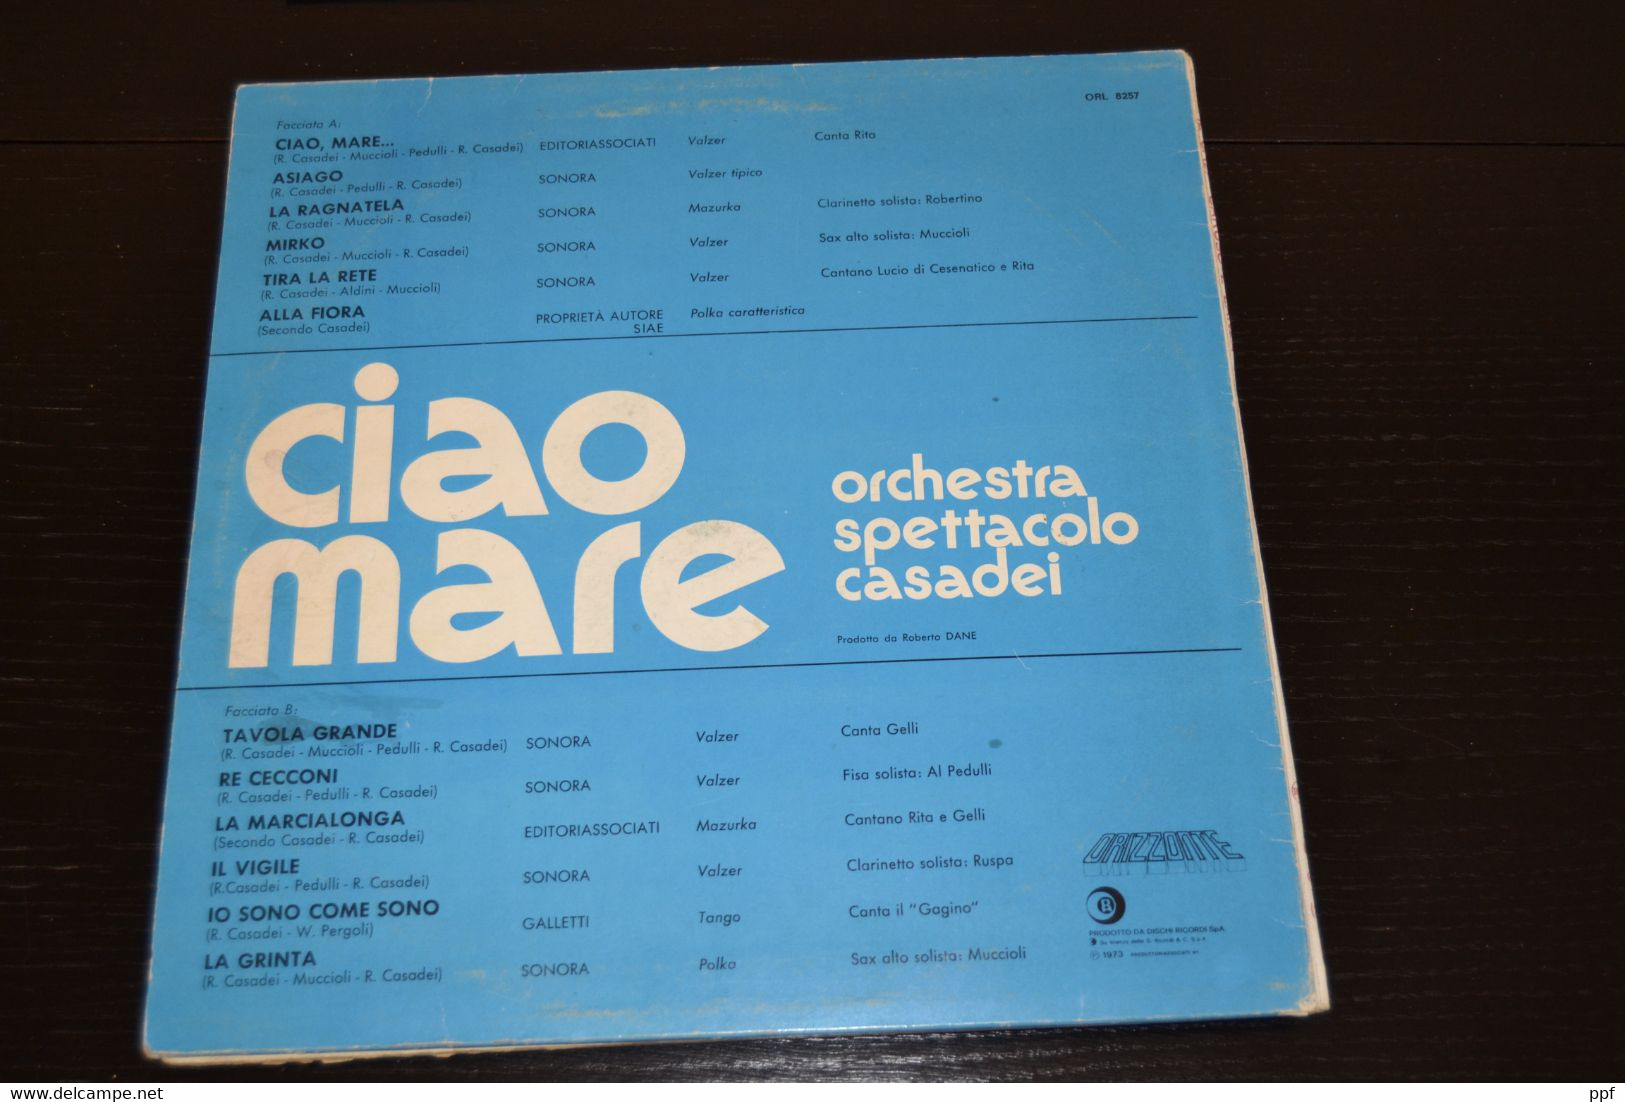 Gli introvabili: Casadei - Primo Taiadei - Misto Mare - Disco samba e altri. 6 dischi 33 giri originali.